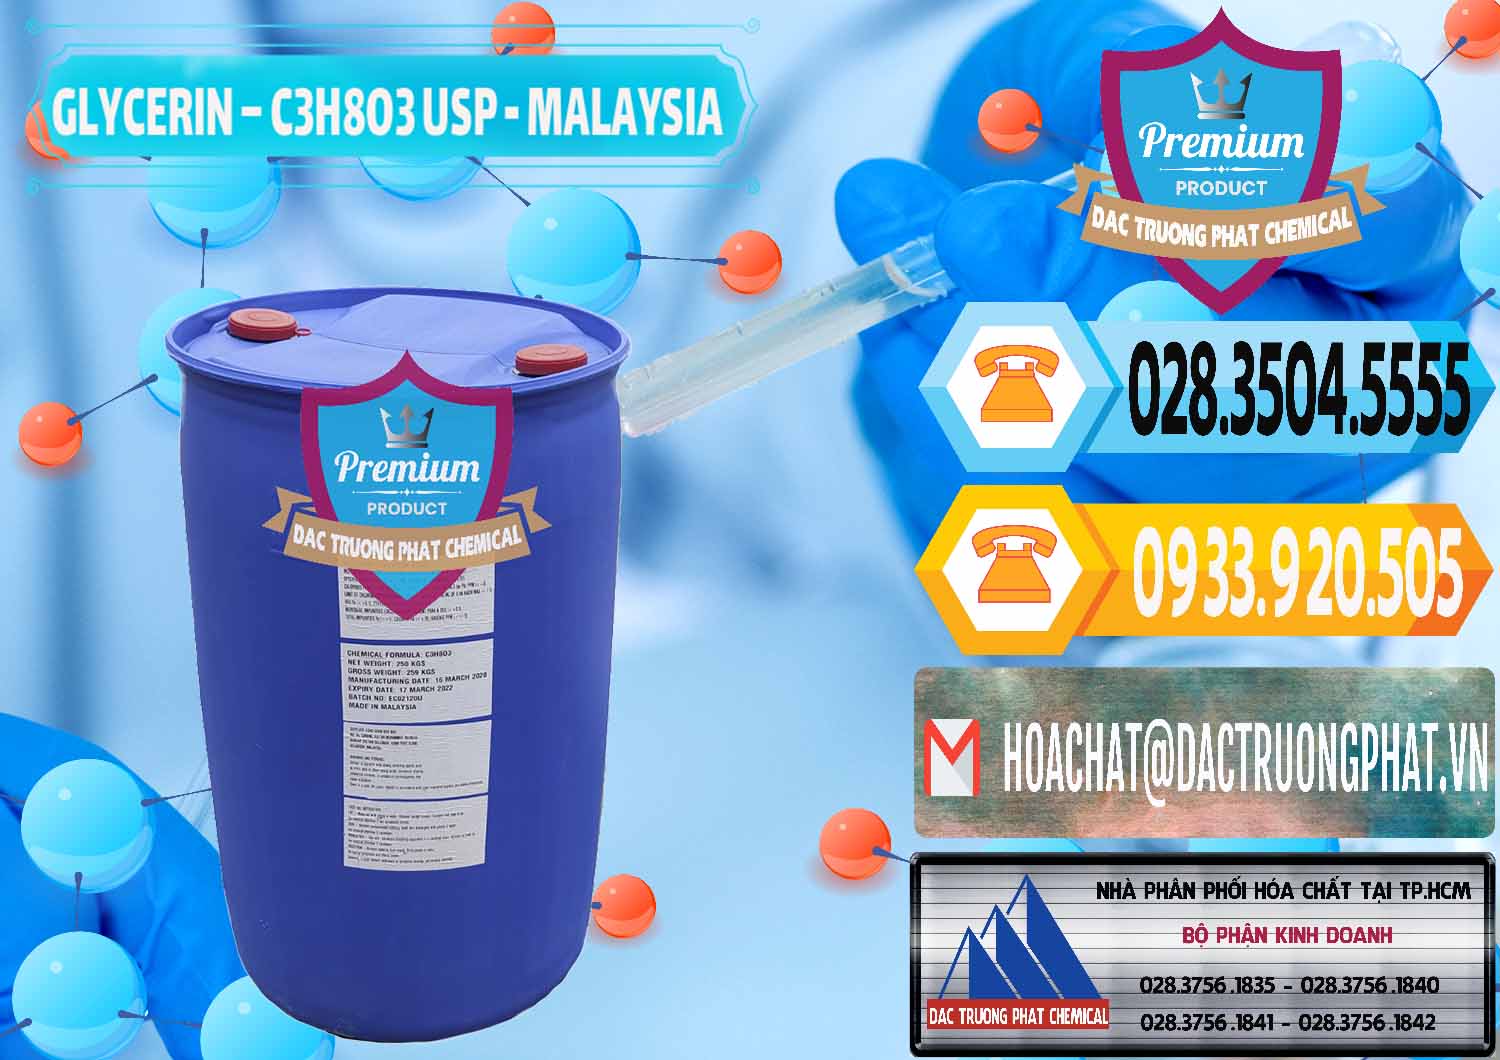 Nhà nhập khẩu & bán Glycerin – C3H8O3 USP Malaysia - 0233 - Công ty chuyên nhập khẩu & phân phối hóa chất tại TP.HCM - hoachattayrua.net